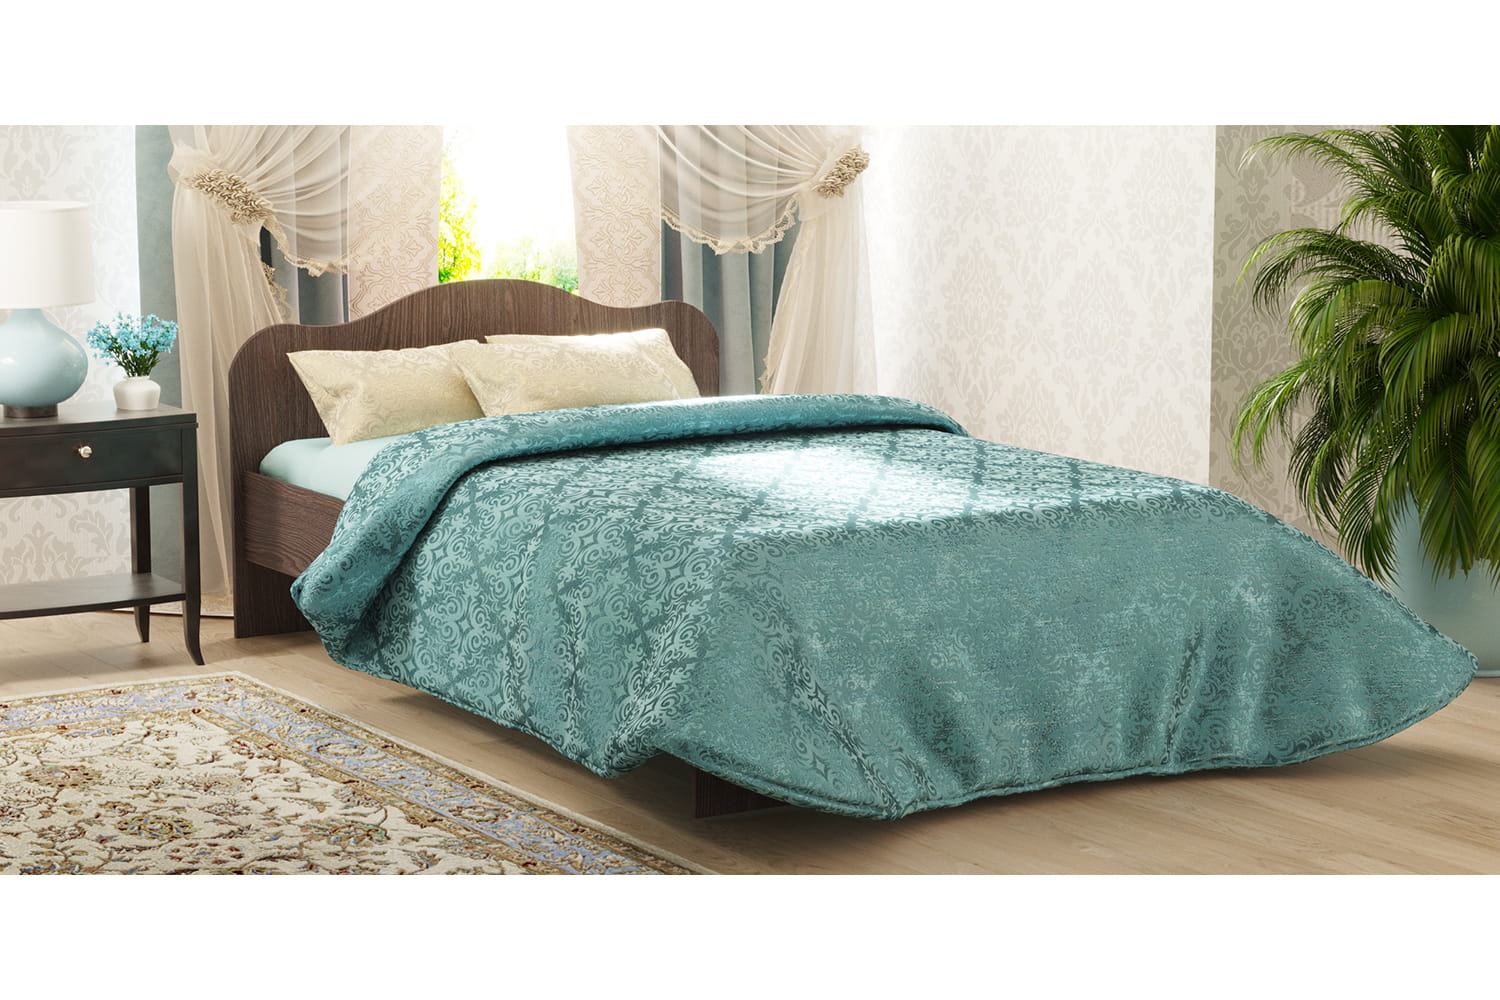 Кровать Анкор светлый фант2 мебель